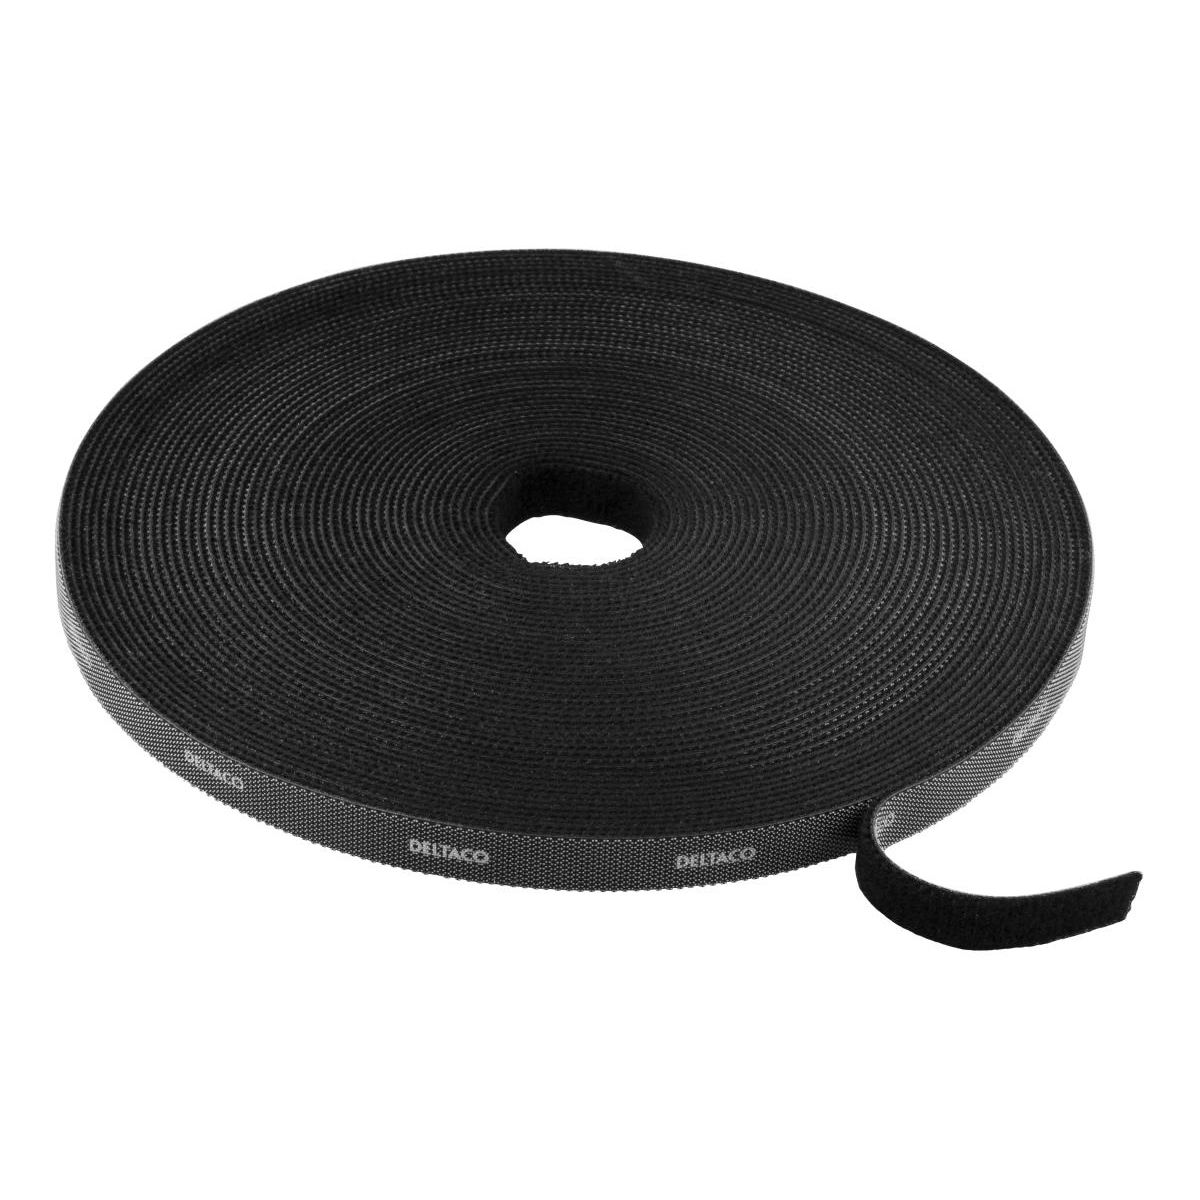 Deltaco kardborrband på rulle, bredd 10mm, 15m, svart